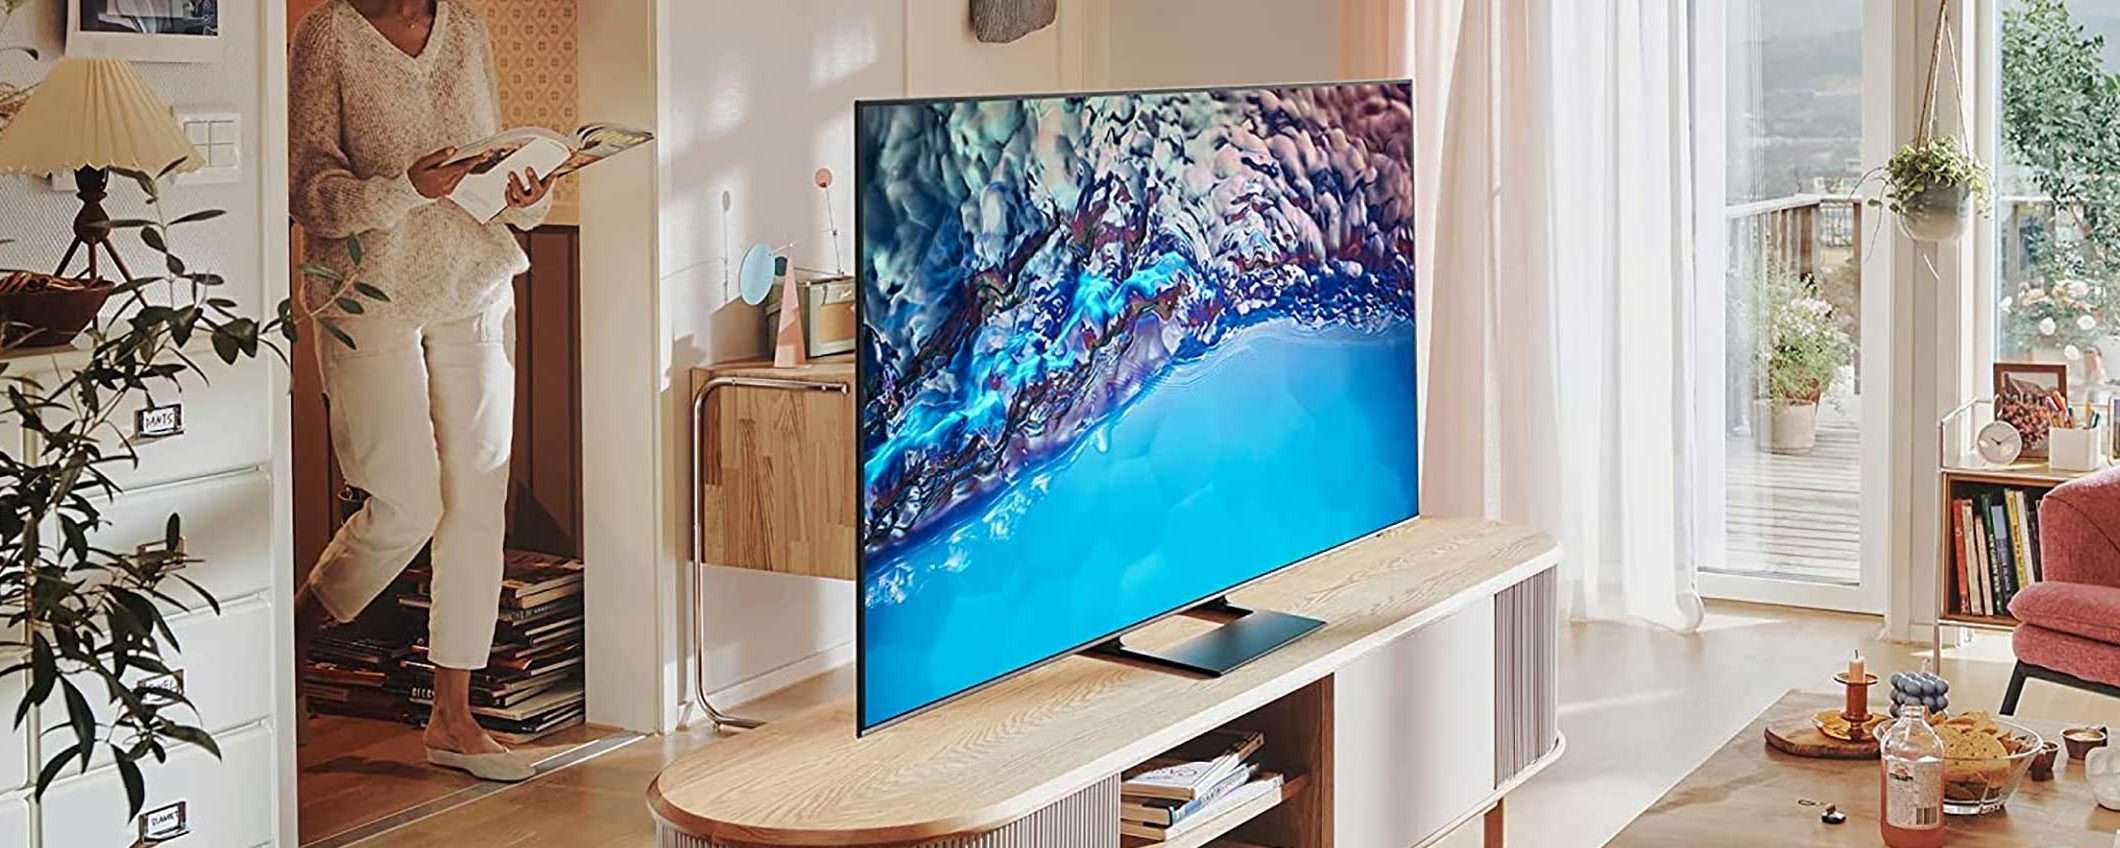 Samsung TV Plus sui televisori di altri brand?